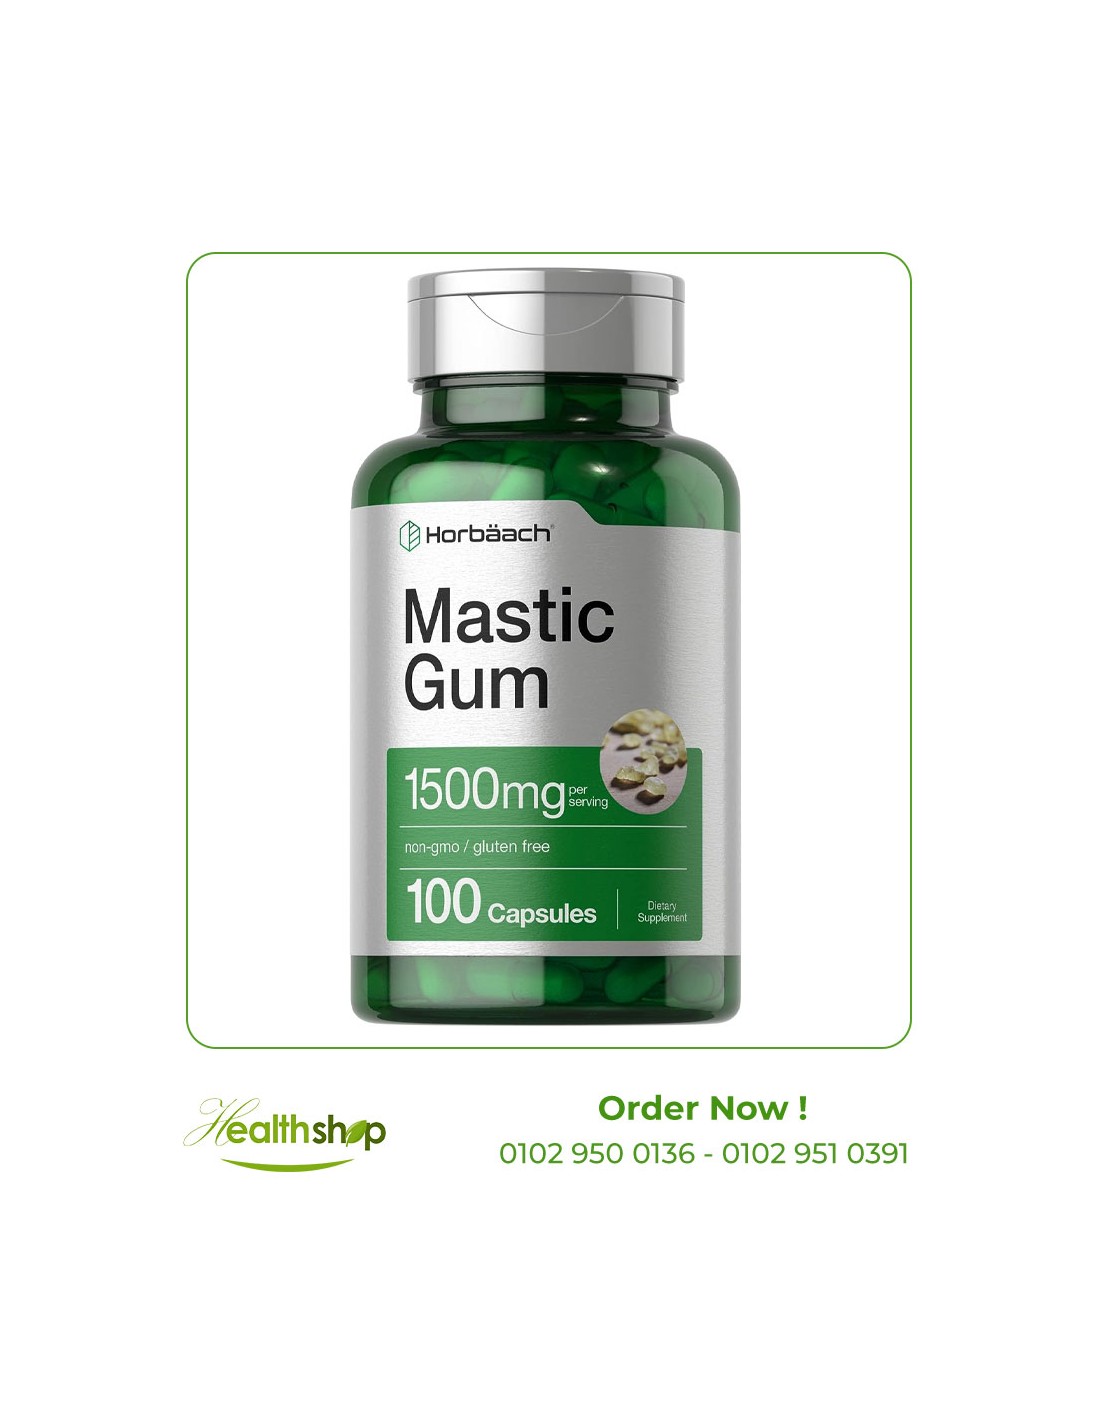 Mastic Gum 1500mg - 100 Capsules